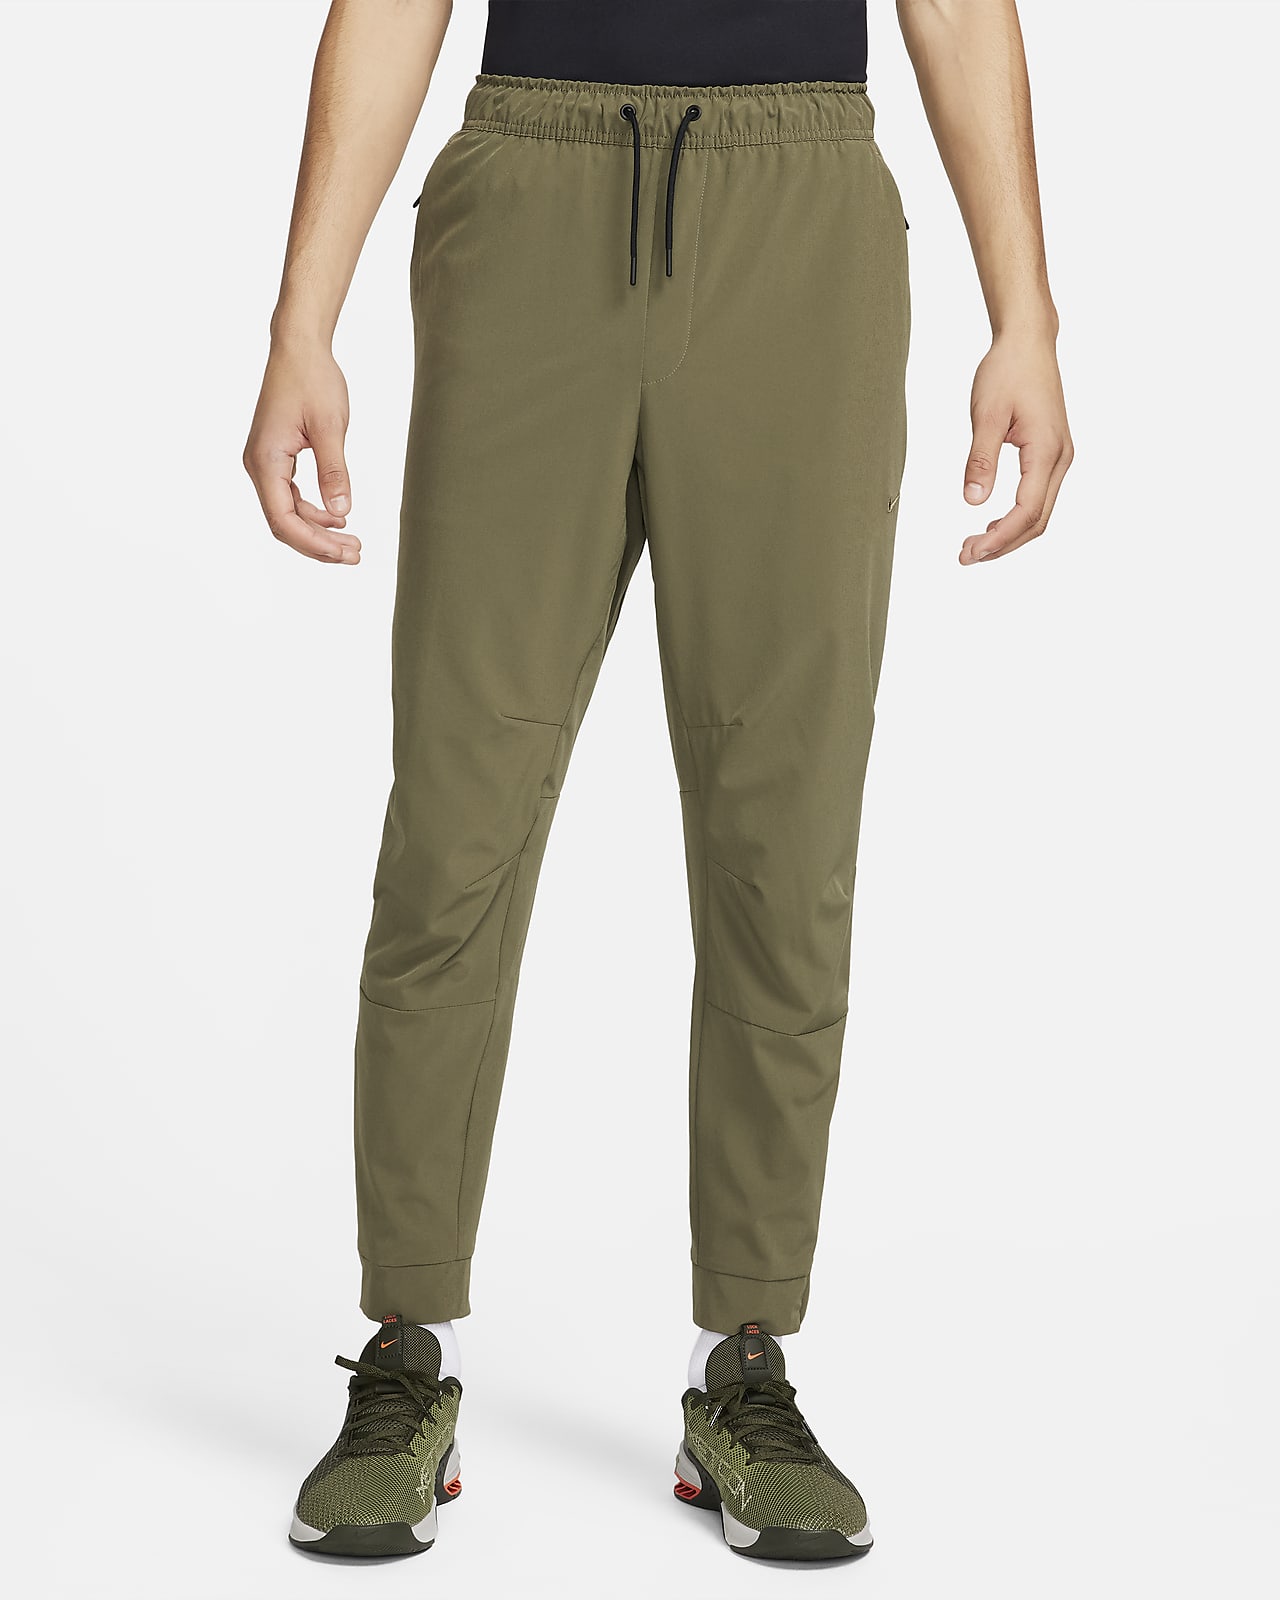 Nike Unlimited Men's Dri-FIT Zip Cuff Versatile Trousers